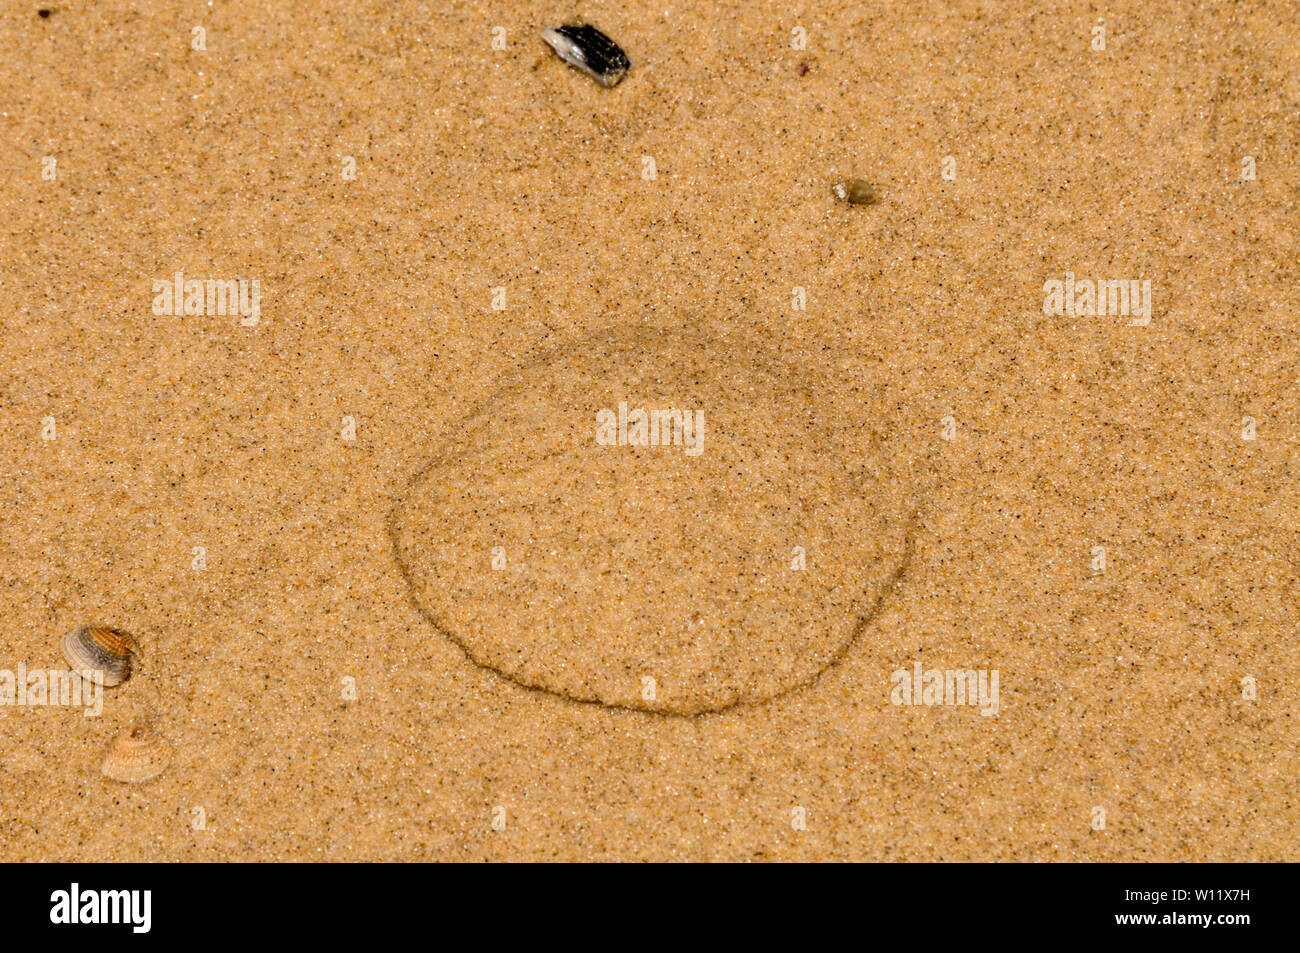 Un conte-tel signe d'une moule enterré dans le sable. C'est creusé et utilisée comme appât pour la pêche le long de la 75 mile beach sur l'île Fraser, Queensland,Austral Banque D'Images